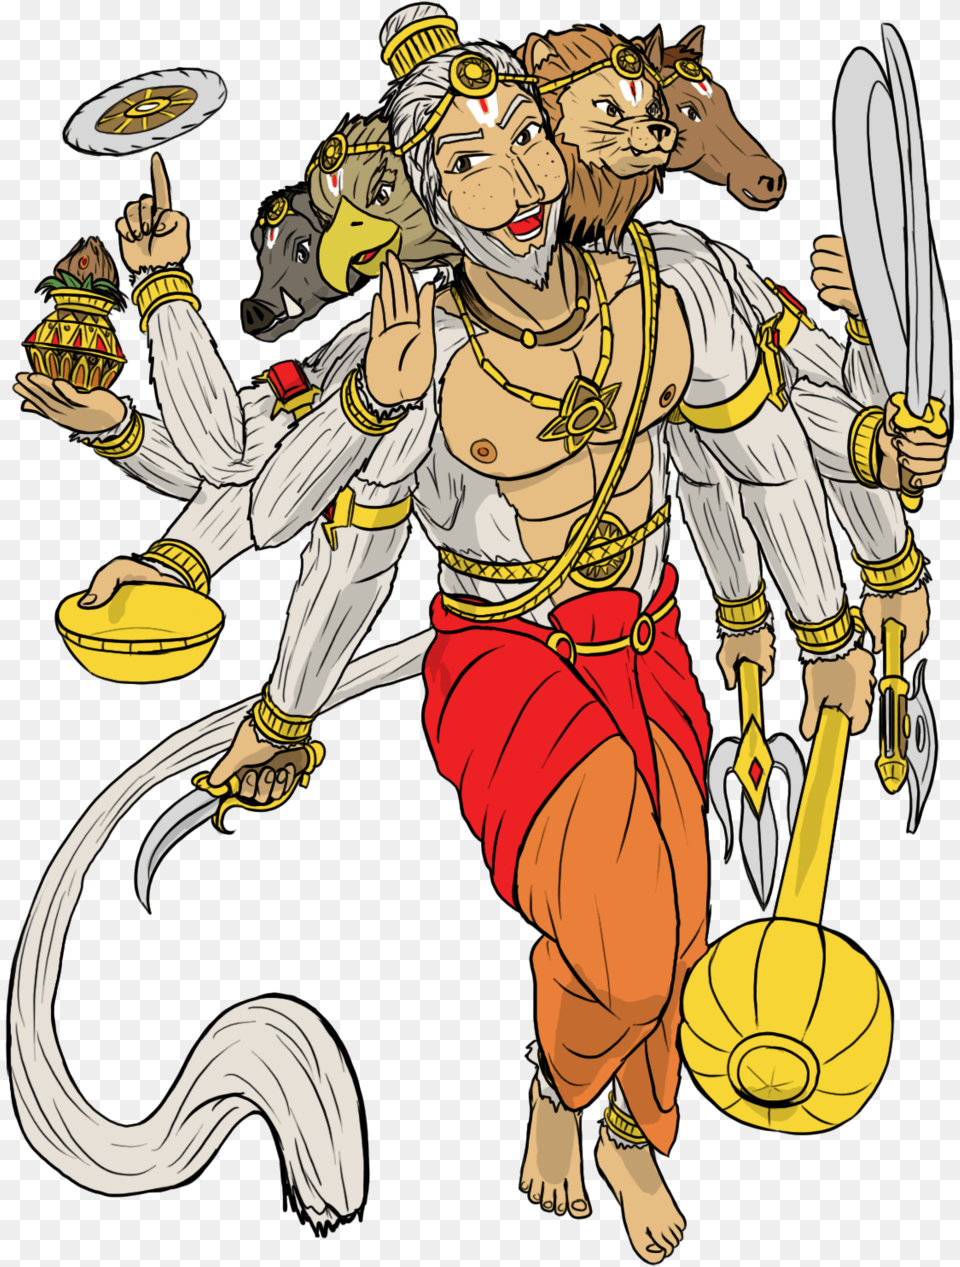 Hanuman Drawing Warrior, Book, Comics, Publication, Person Png Image